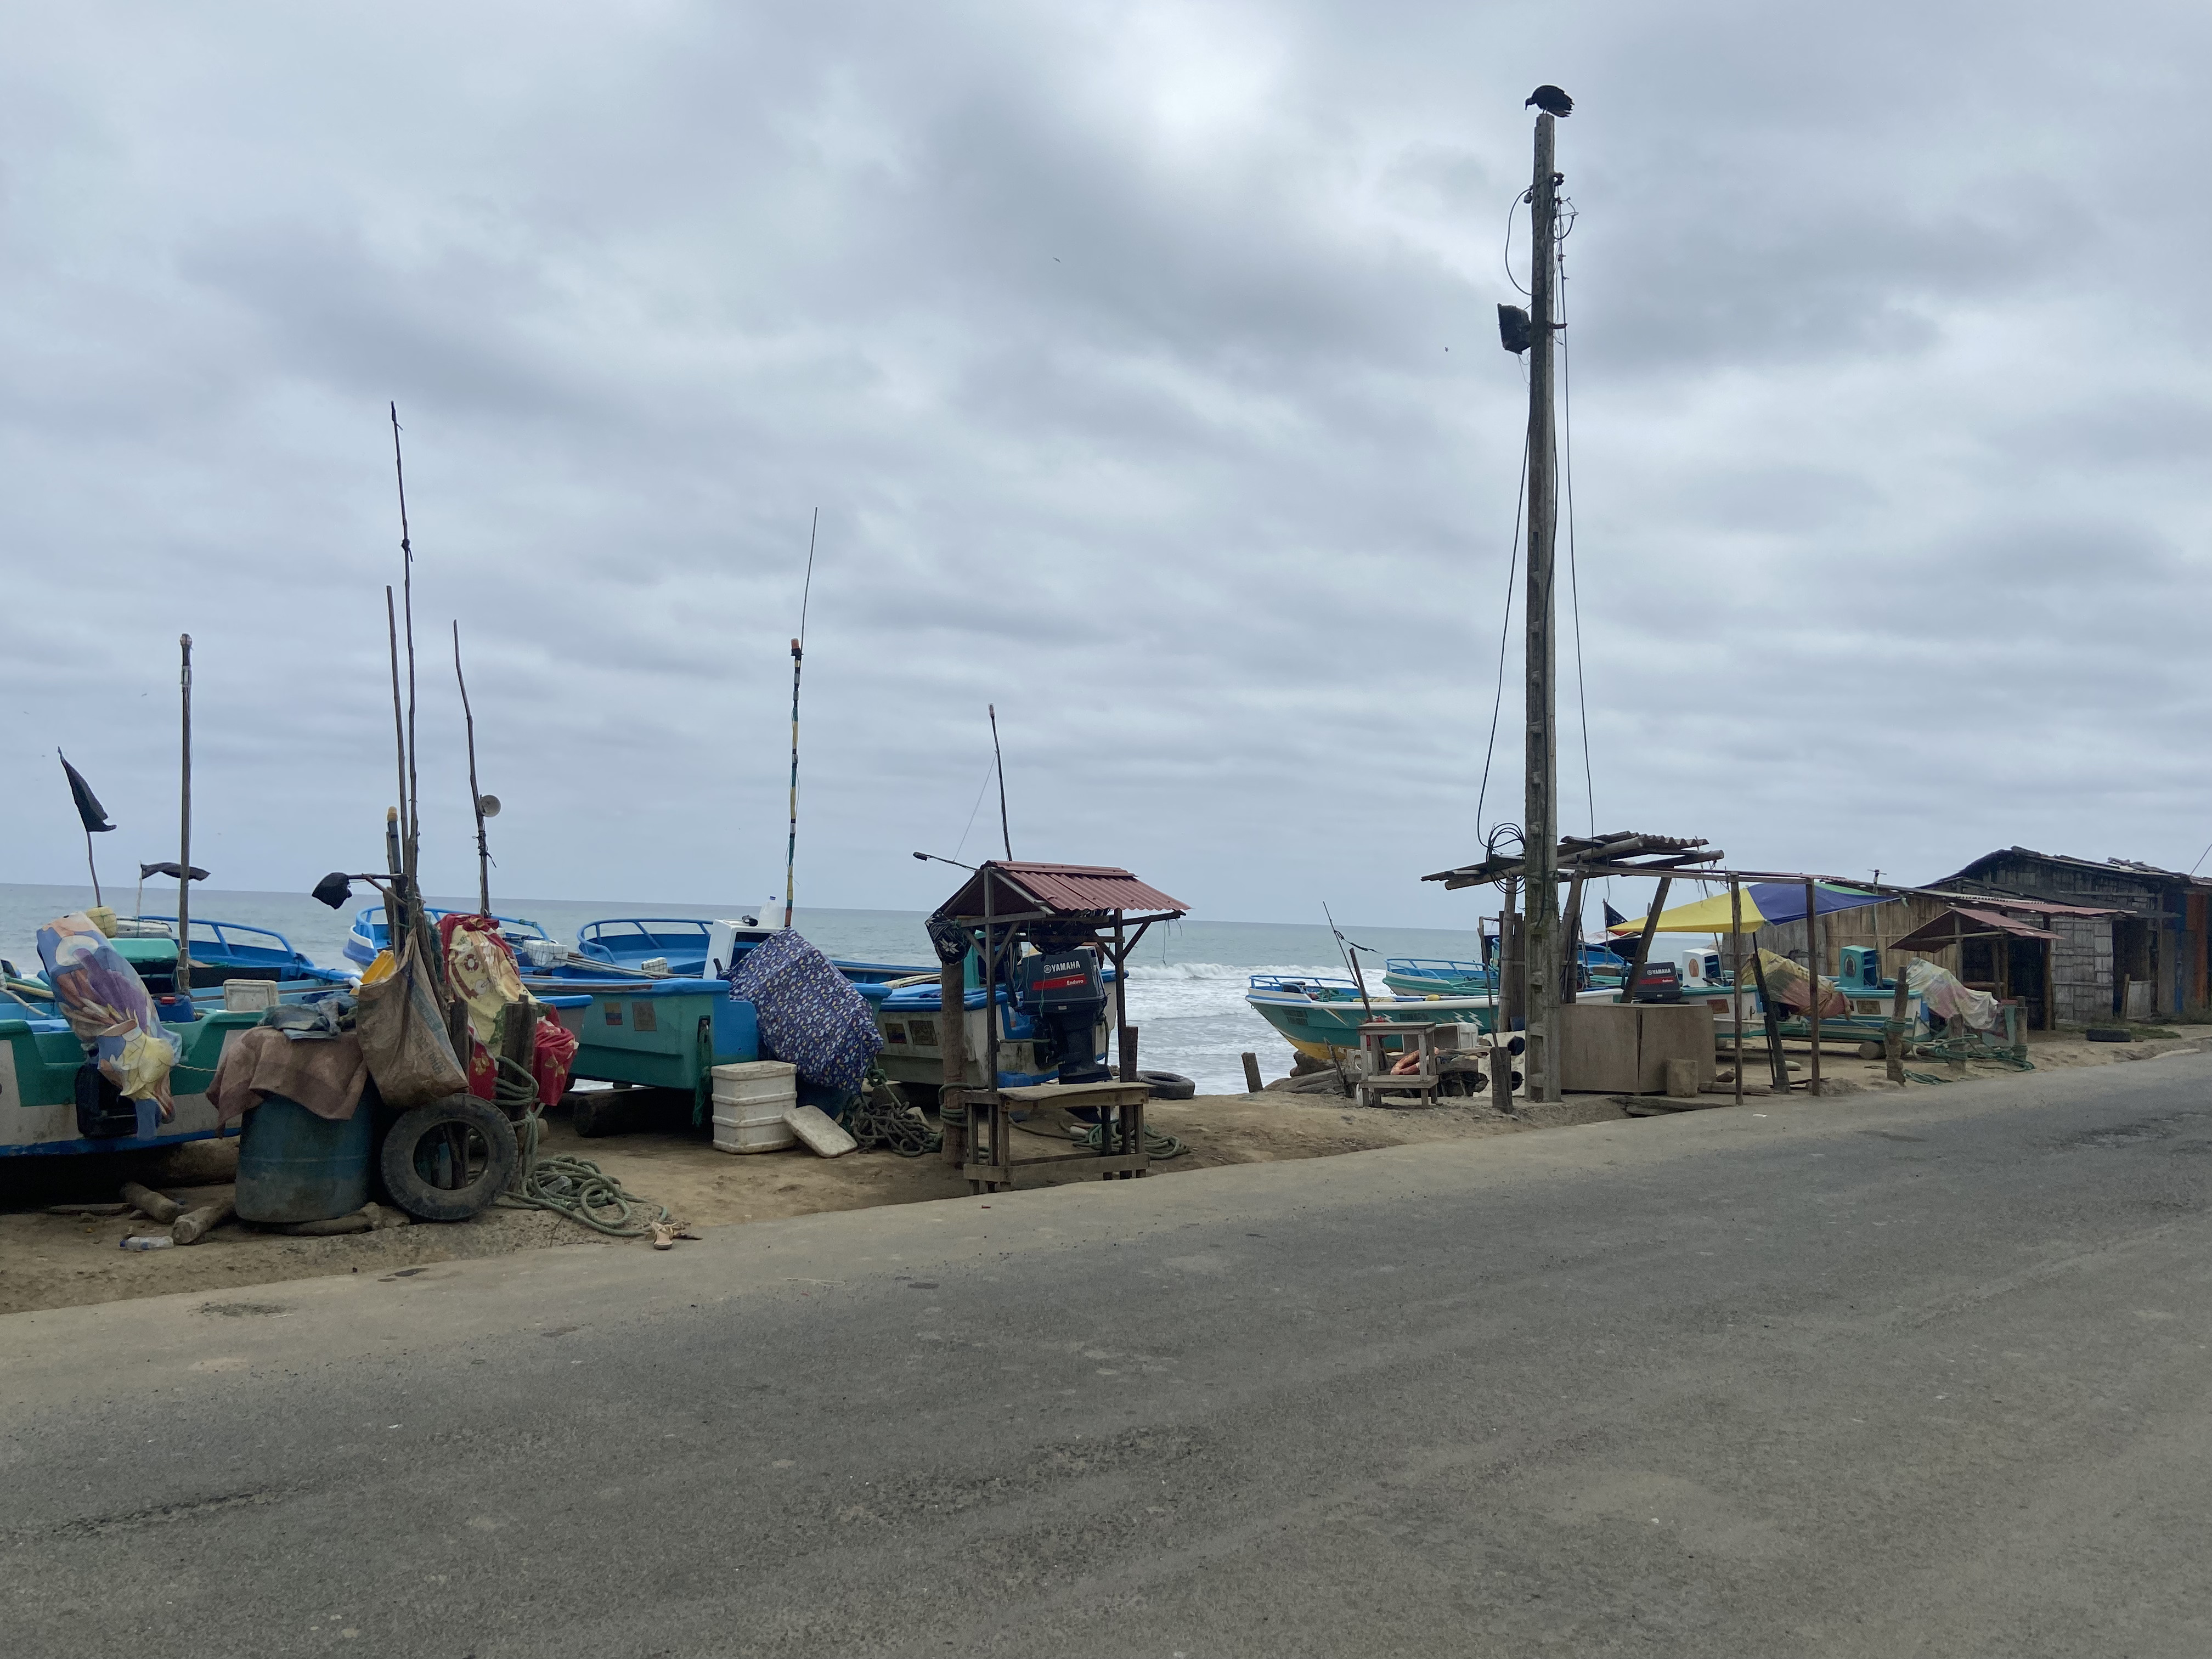 Los pueblos pesqueros de Ecuador reflejan una problemática compleja de marginalización y pobreza.